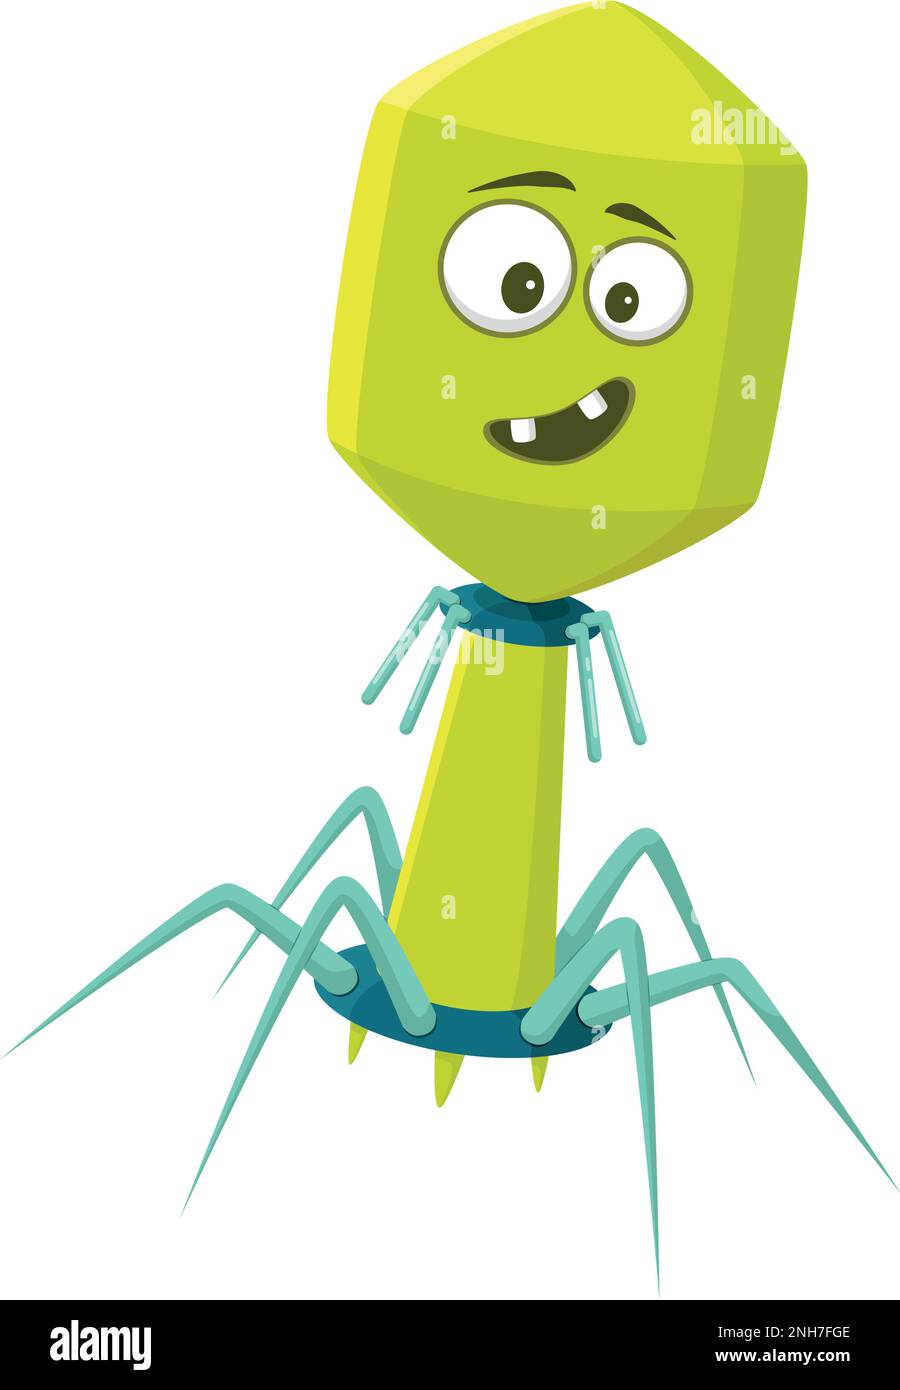 Illustrazione vettoriale di un virus batteriofago in stile cartoon isolato su sfondo bianco Illustrazione Vettoriale